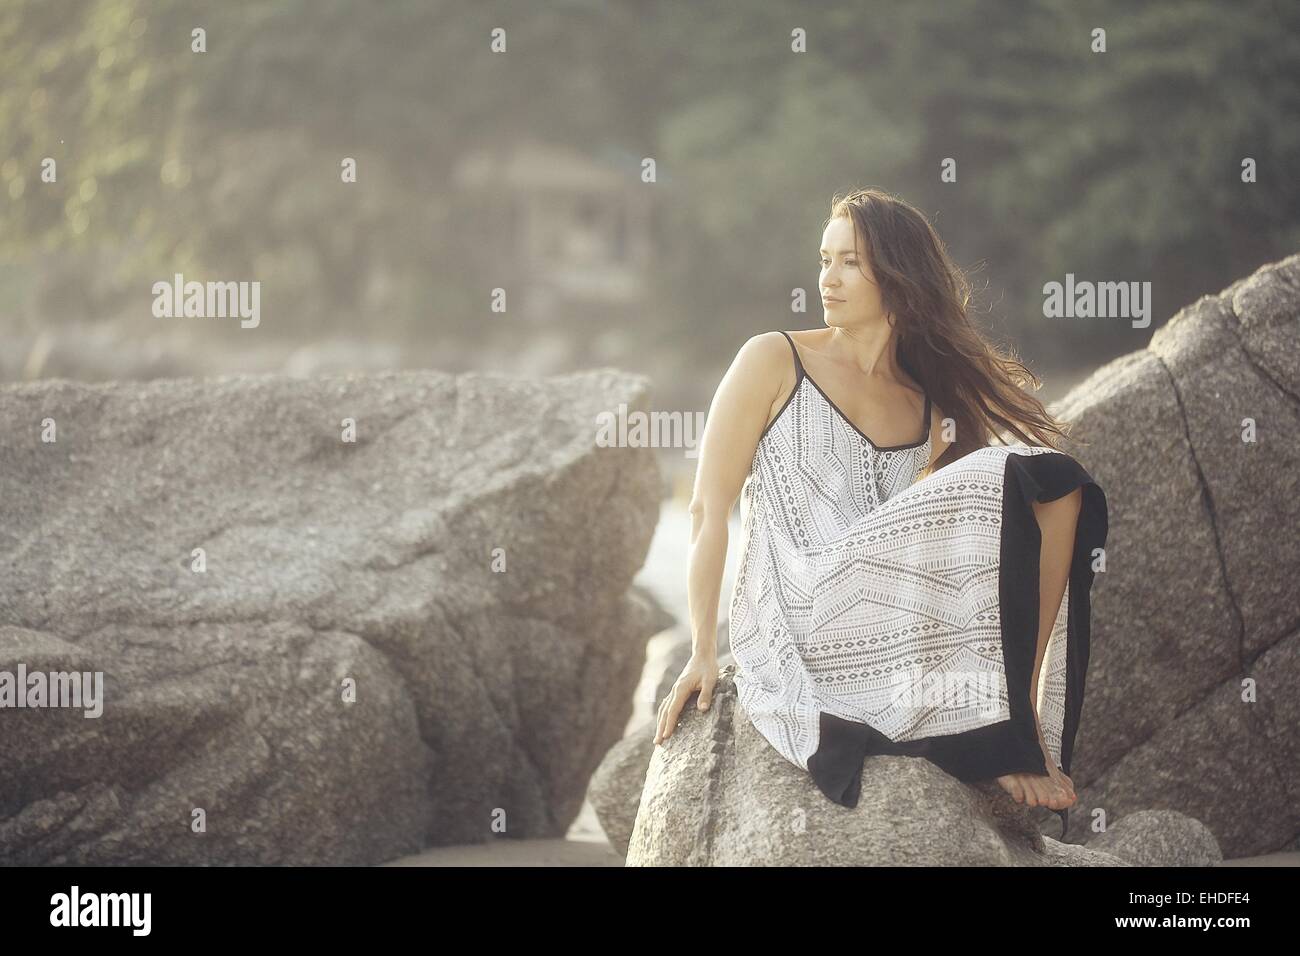 girl in a sundress summer on the rocks Model Stock Photo